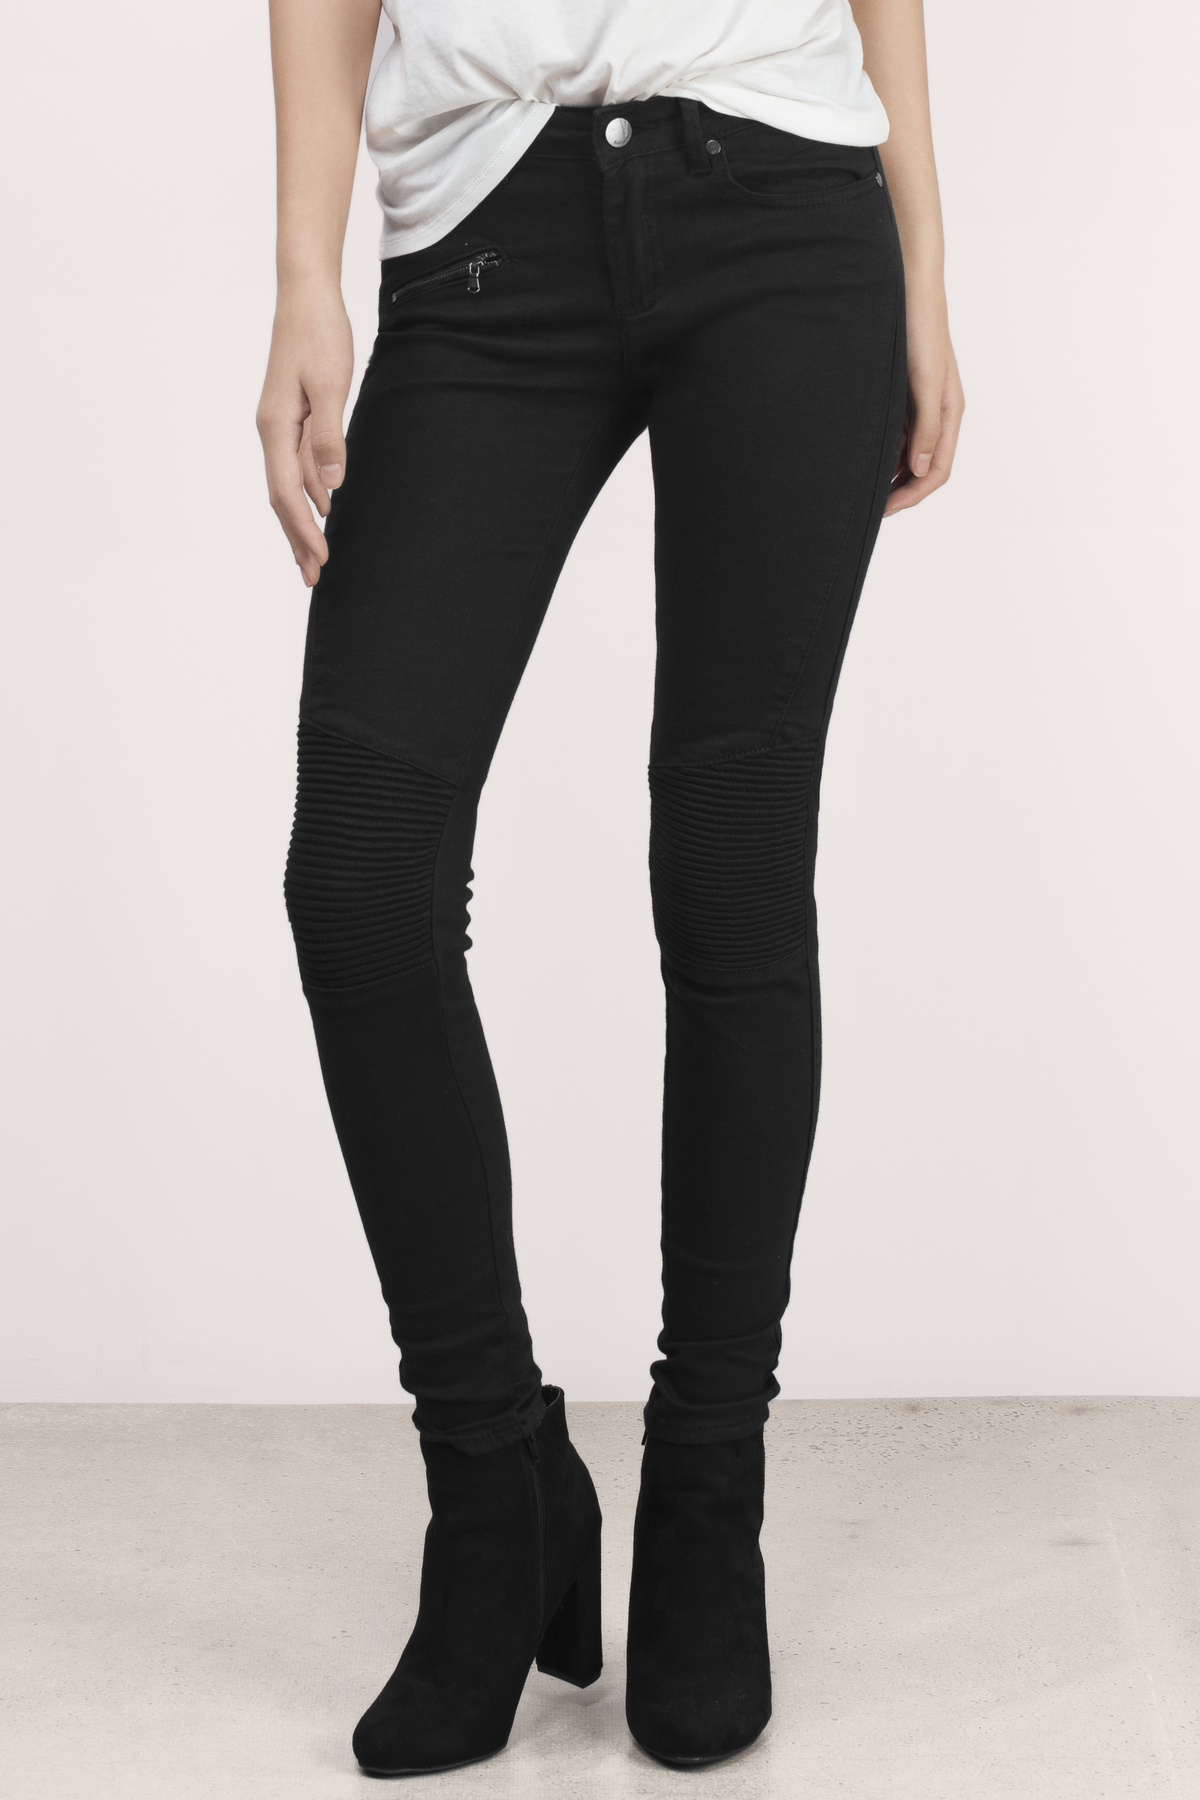 Val Skinny Moto Jeans in Black - $24 | Tobi US